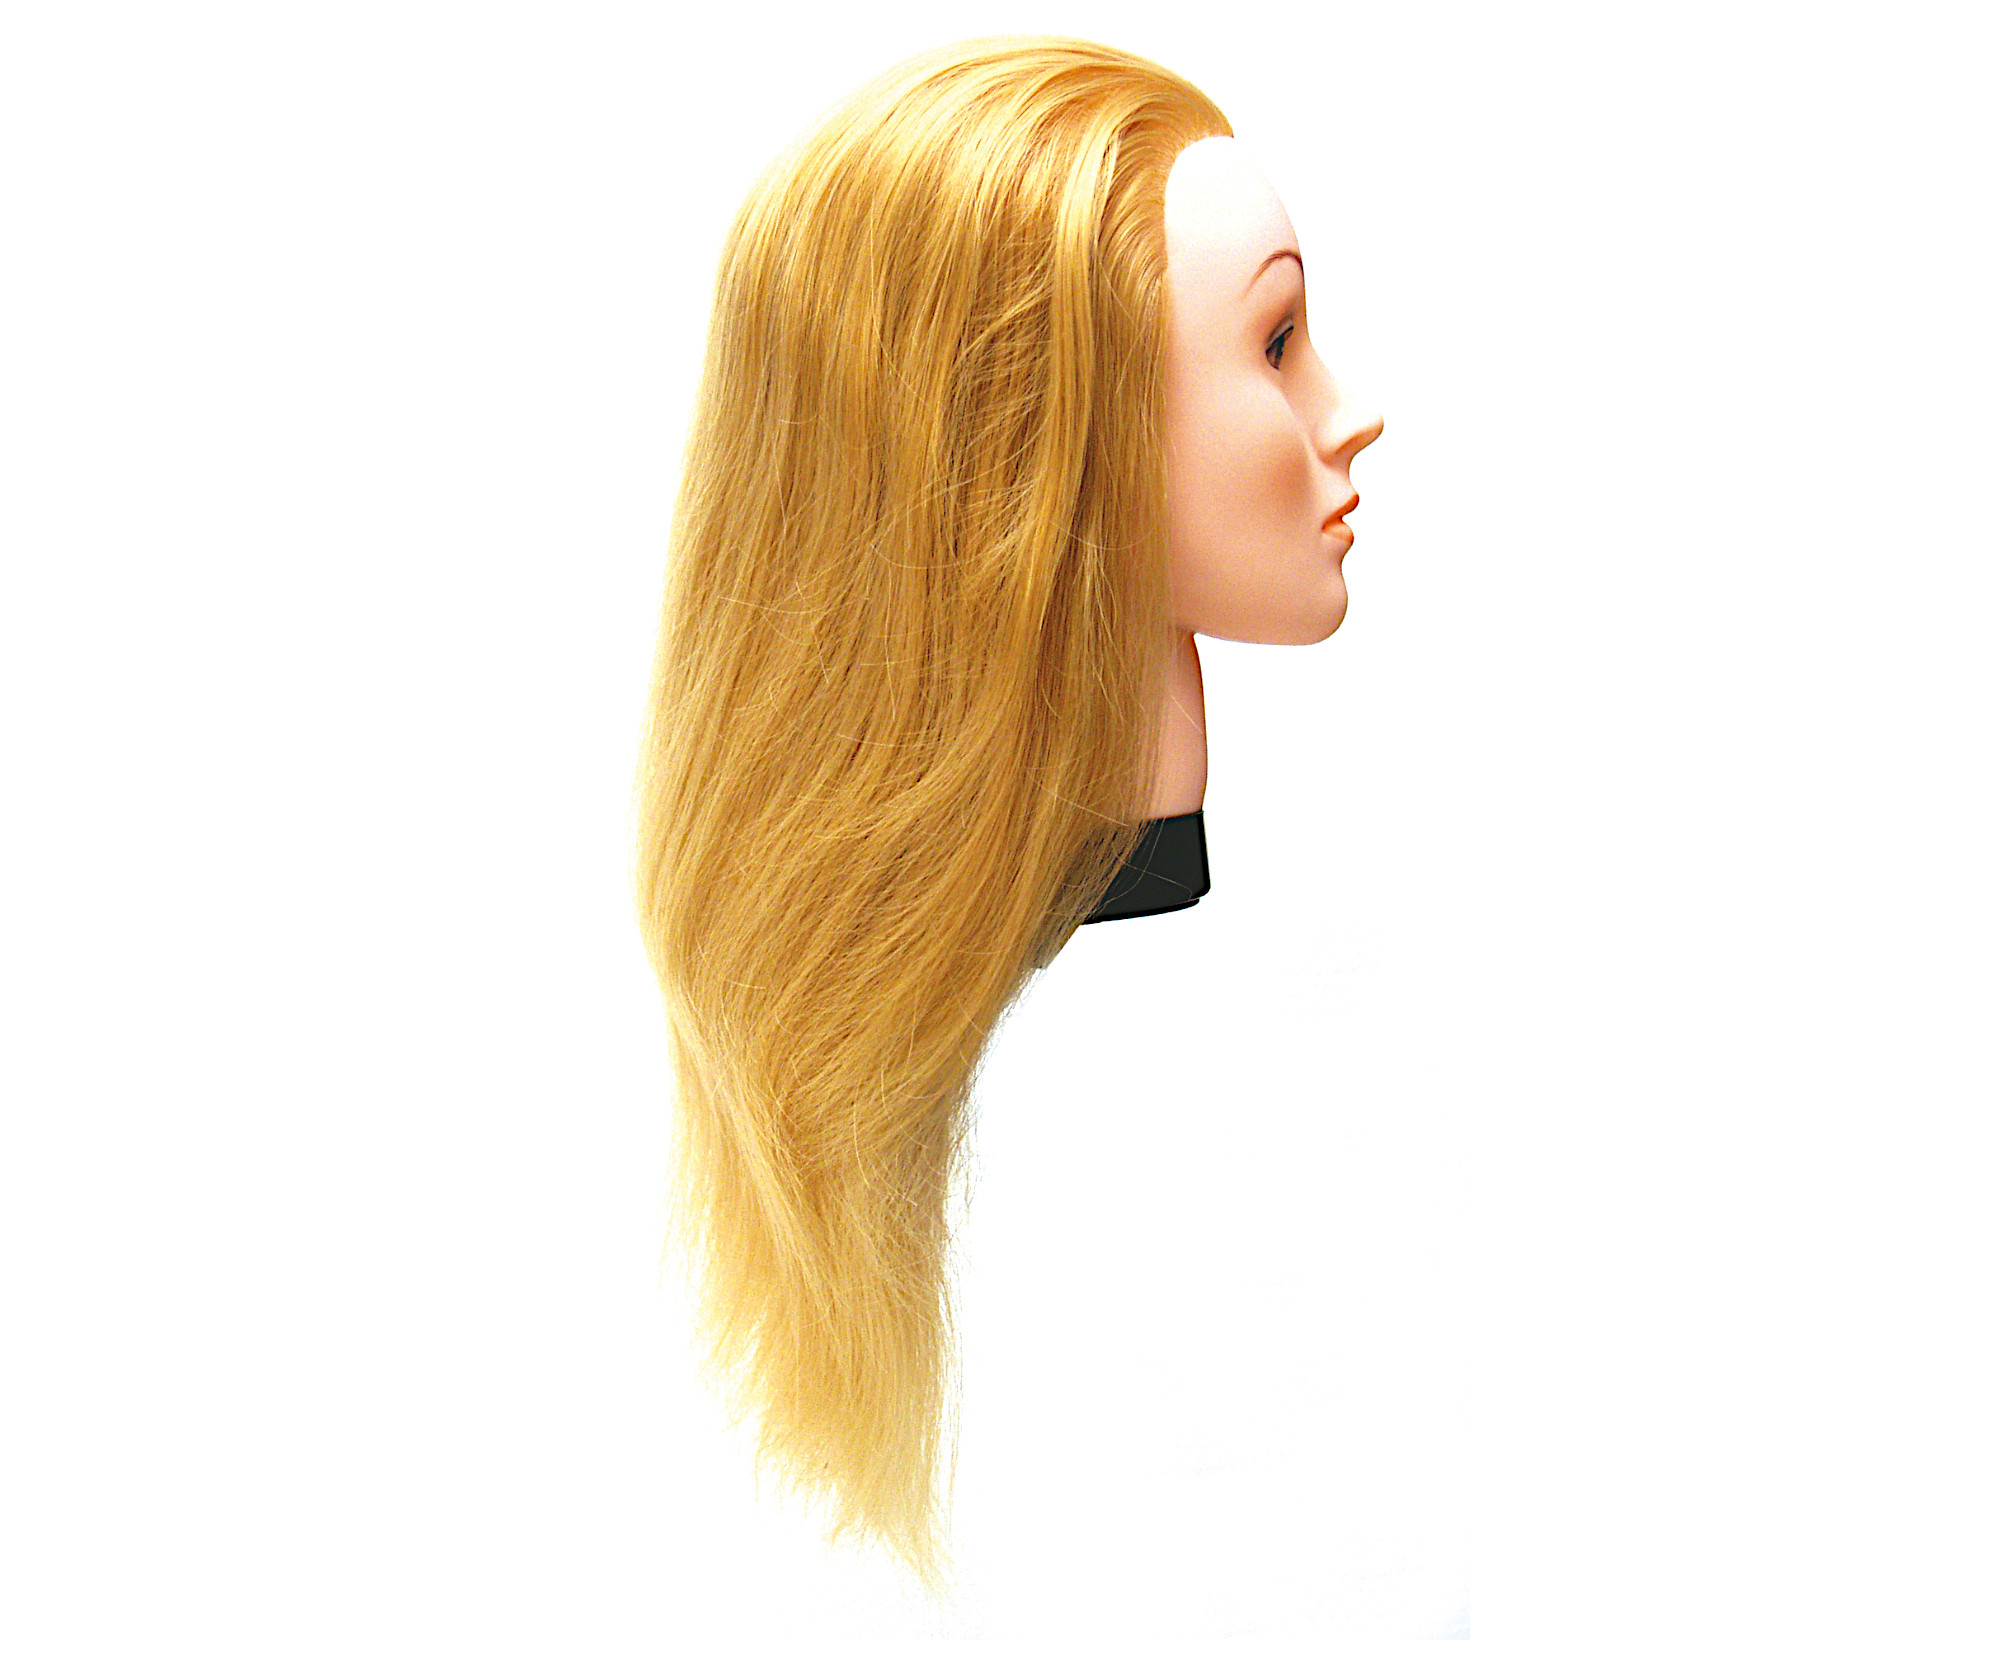 Cvičná hlava s umělými vlasy Eurostil Profesional - světlá blond, 35-40 cm (02543) + DÁREK ZDARMA